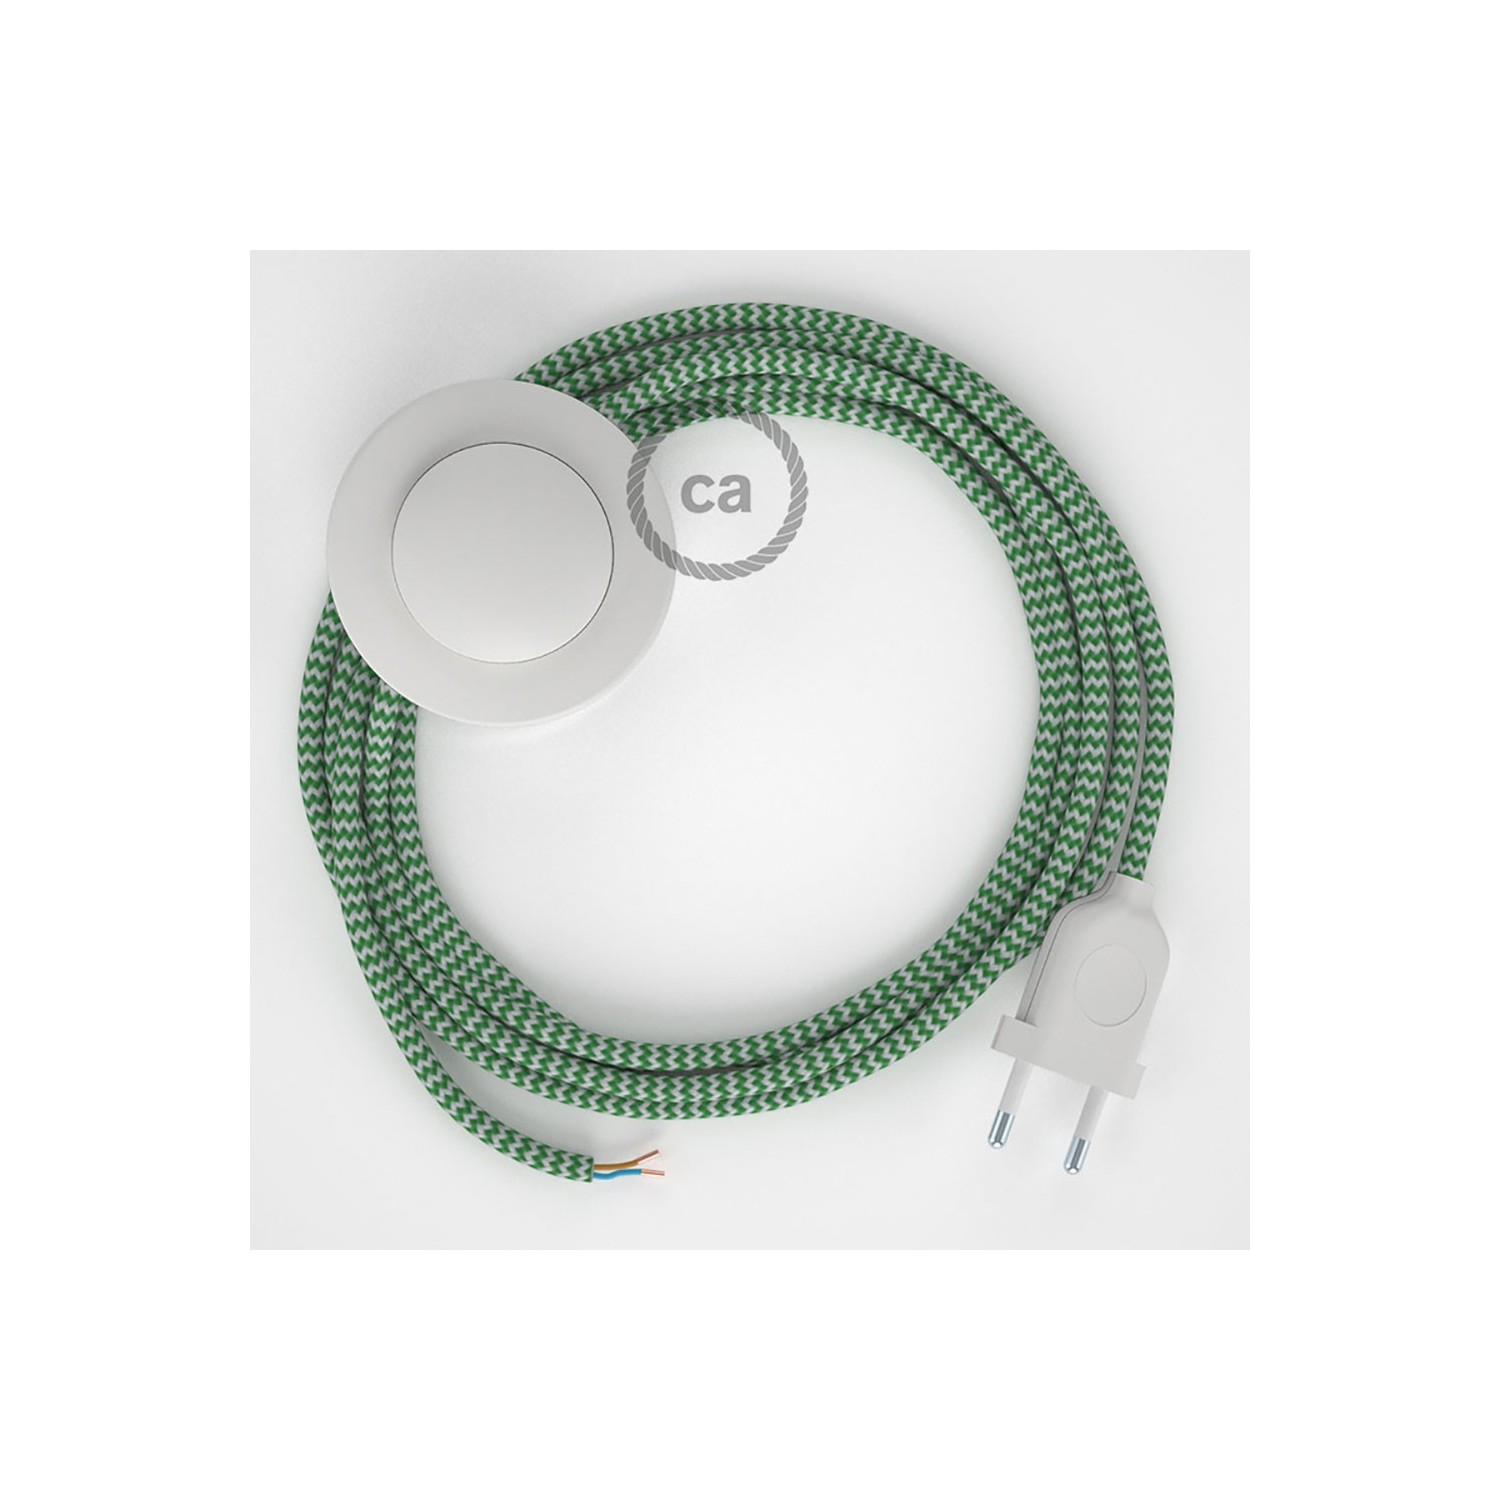 Stehleuchte Anschlussleitung RZ06 Zick-Zack Weiß Grün Seideneffekt 3 m. Wählen Sie aus drei Farben bei Schalter und Stecke.